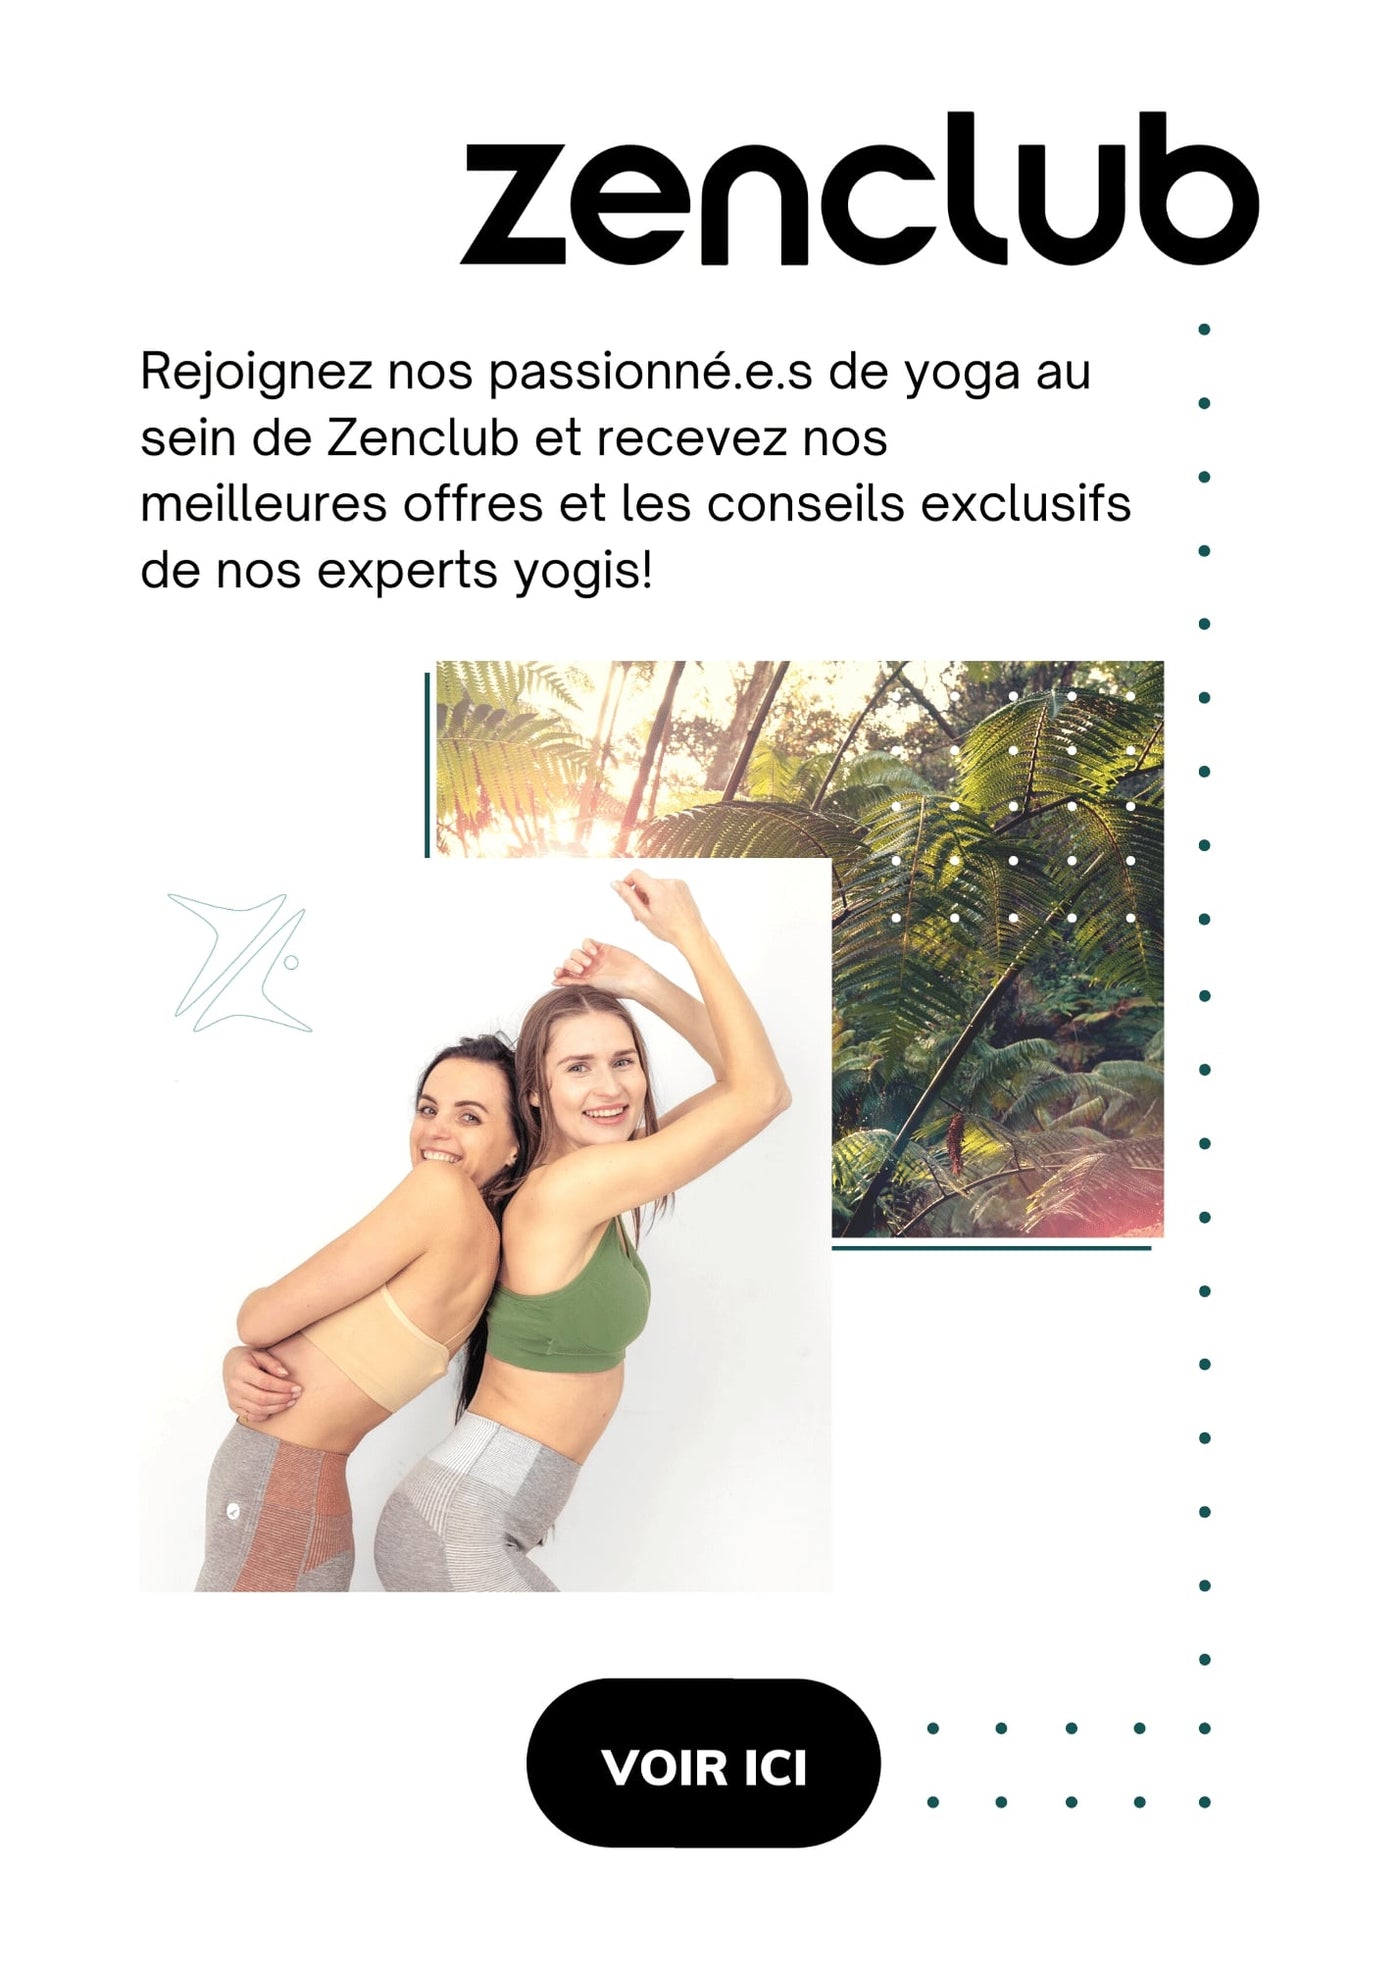 image de bannière avec une photo d'arbres et deux images de deux femmes, avec le texte suivant: zenclub rejoignez nos passionne.els de yoga au sein de zenclub et recevez nos meilles offres et les conseils exclusifs de nos experts yogis!